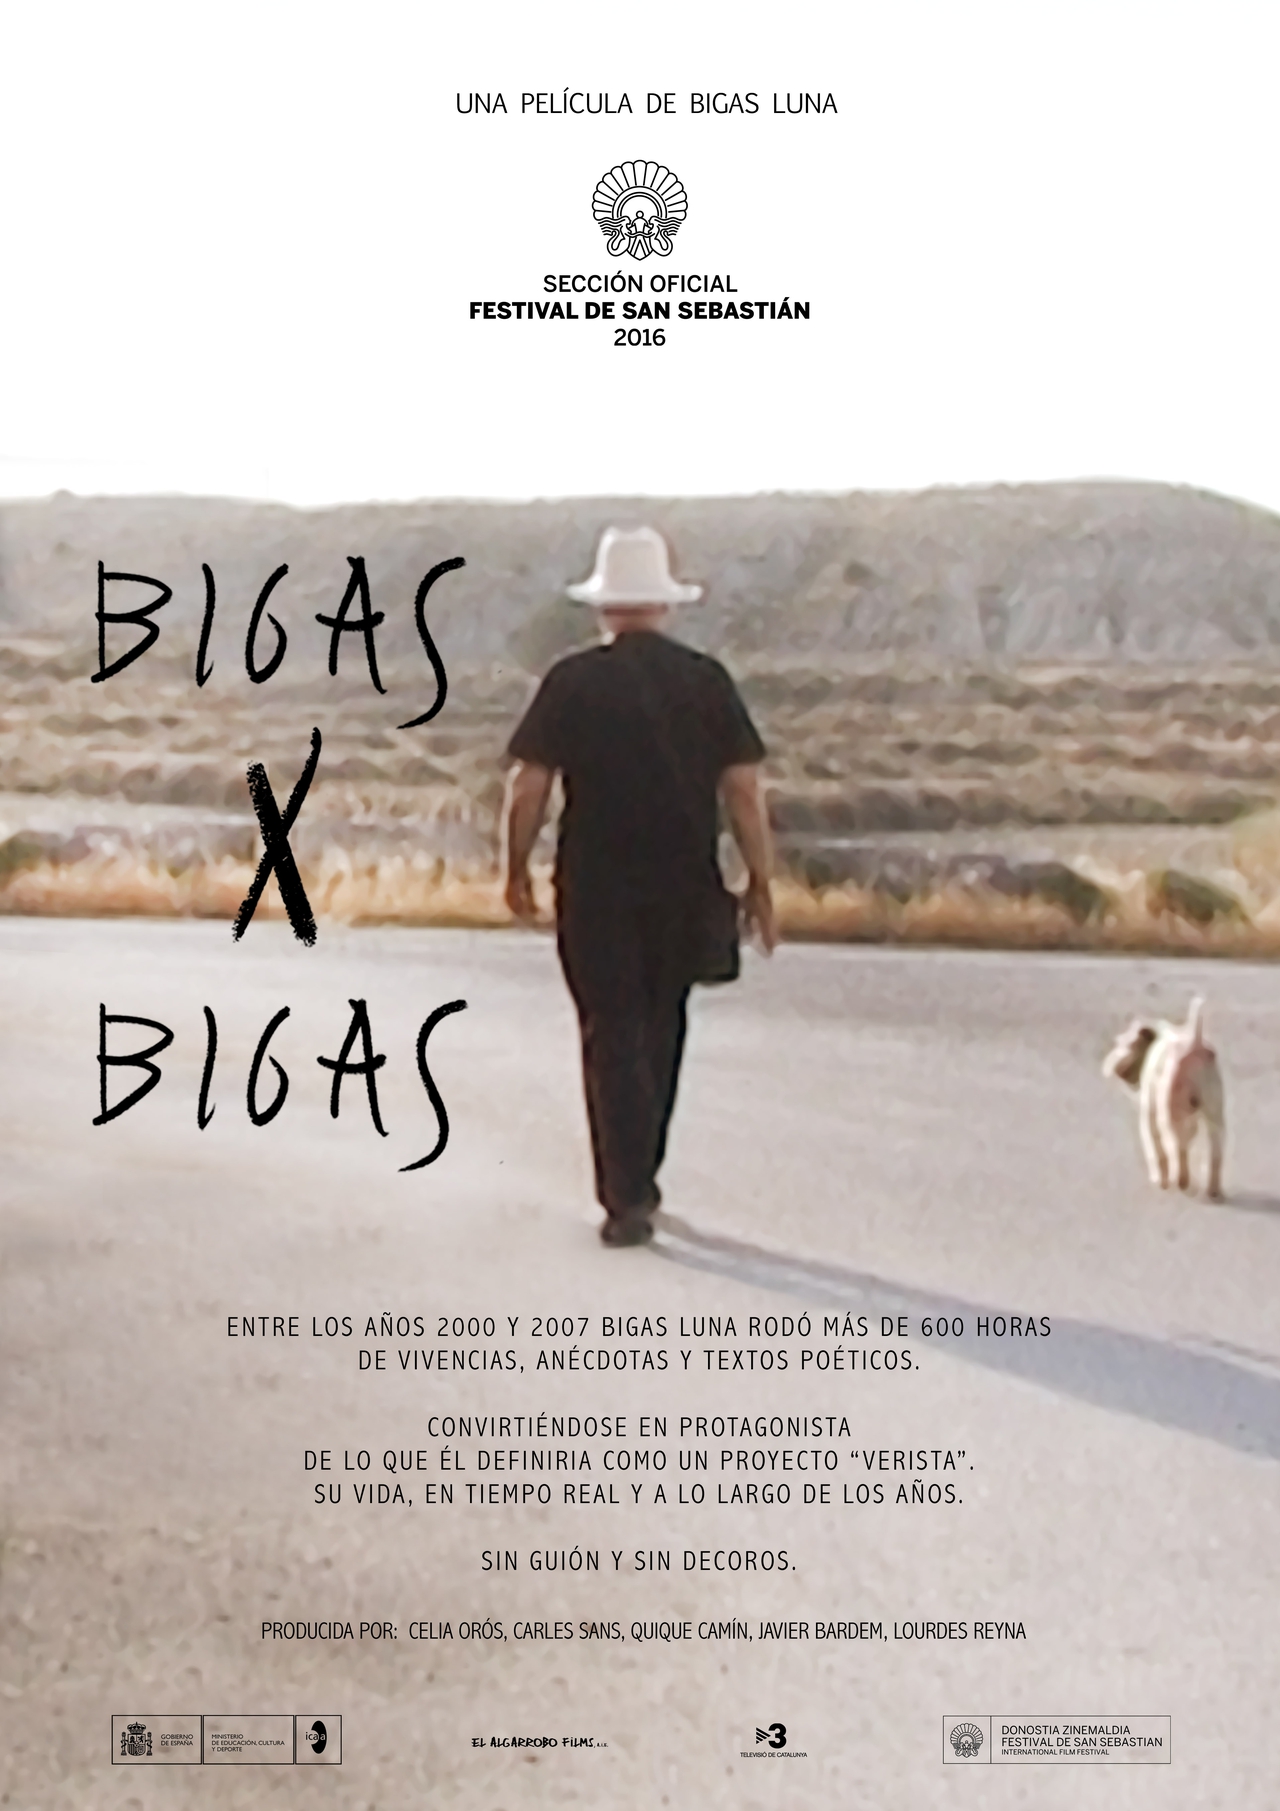  فیلم سینمایی Bigas x Bigas به کارگردانی Bigas Luna و Santiago Garrido Rua